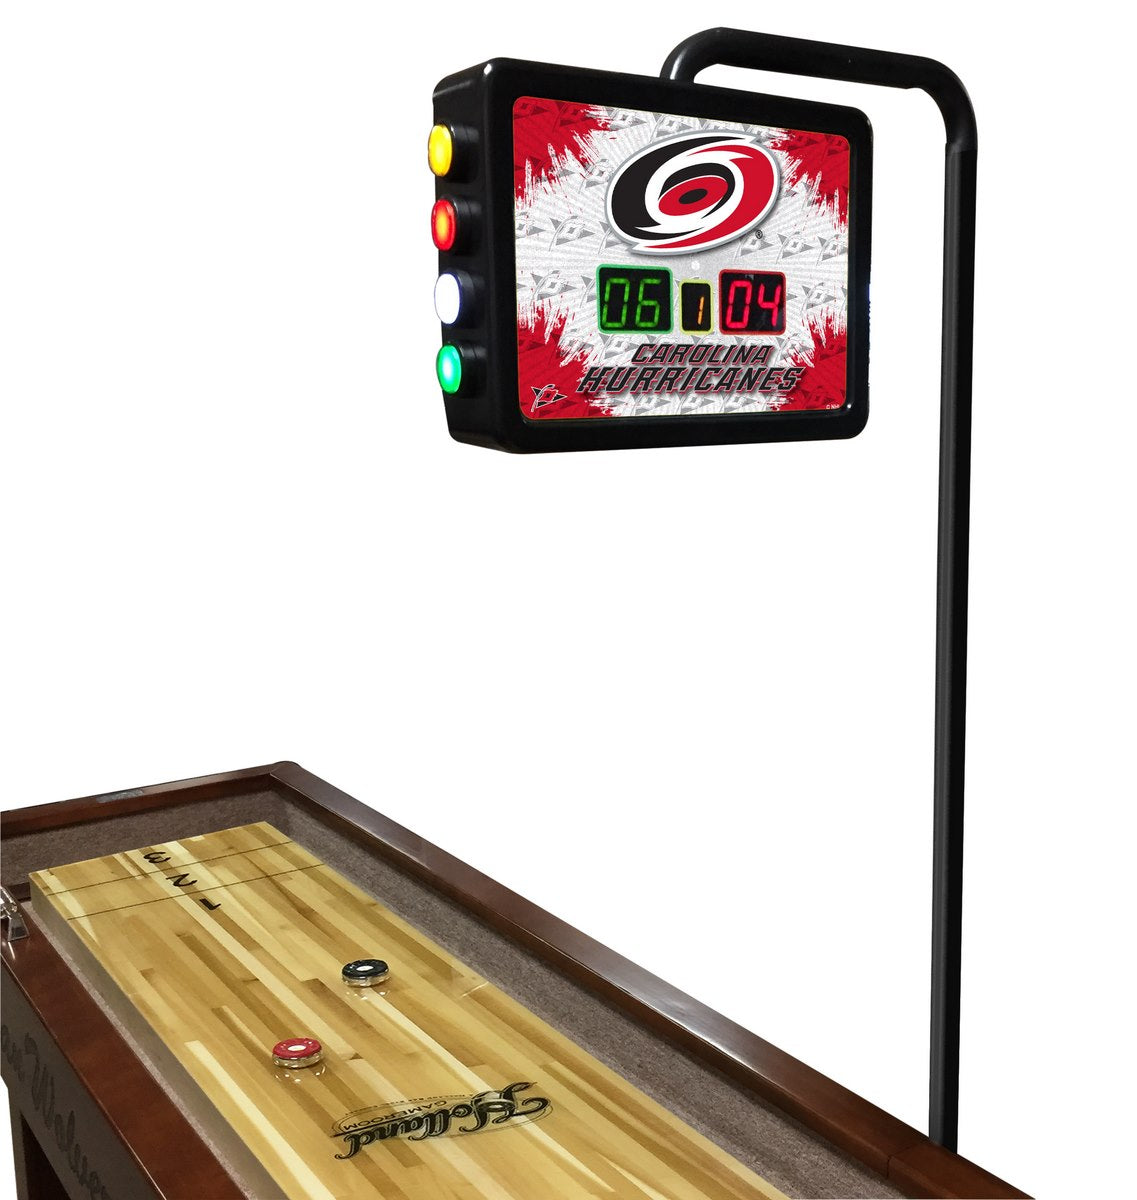 NHL Holland Bar Stool Carolina Hurricanes 12' Shuffleboard Table w/ Scoreboard